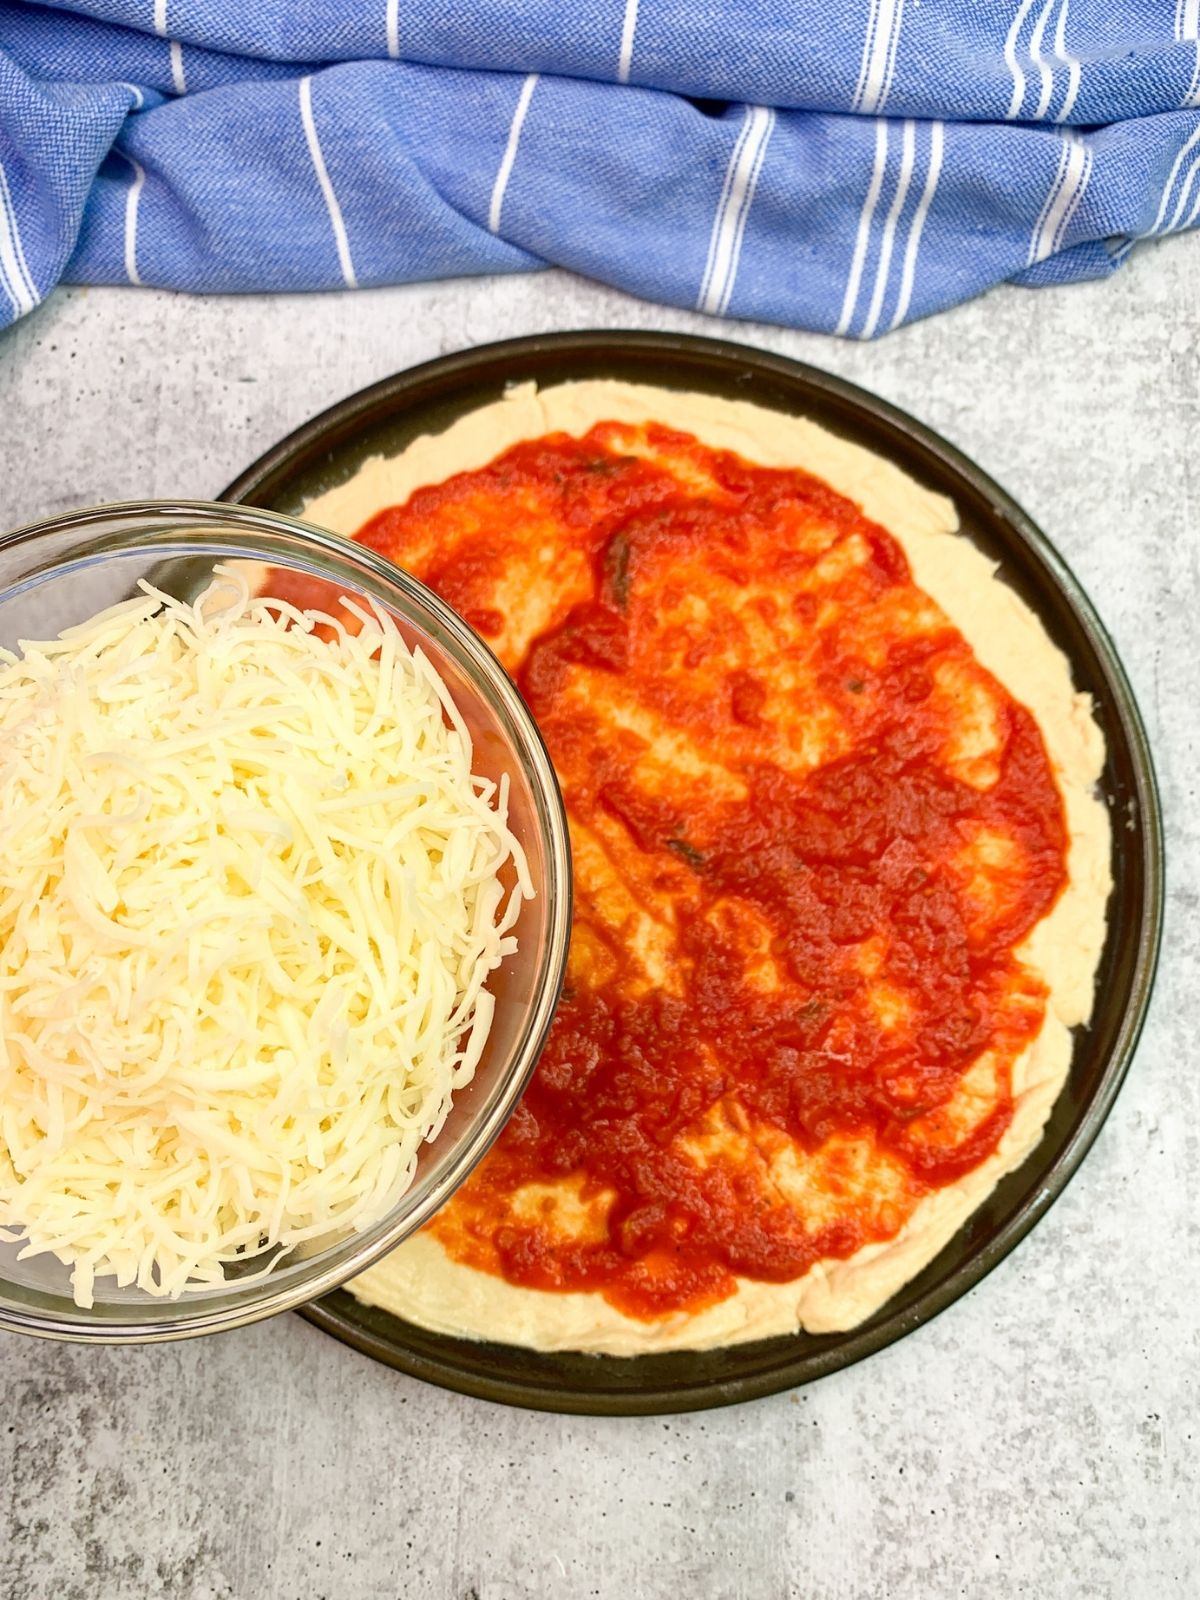 Mozzarella cheese for crescent roll pizza with tomato sauce.